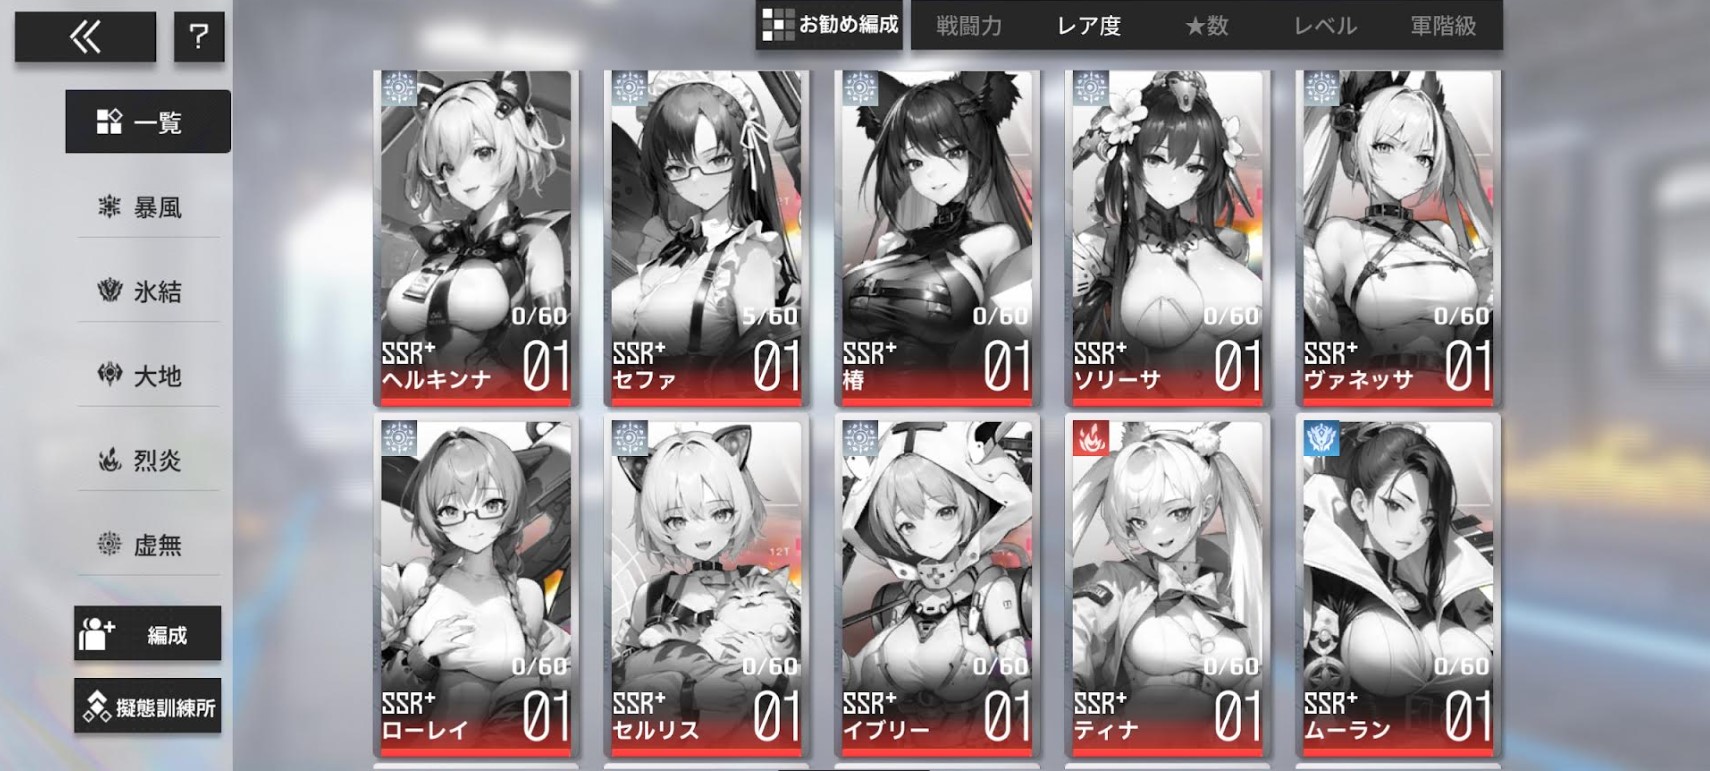 「熱戦少女」キャラクター一覧！SSR+・SSR・SR・R、それぞれのキャラクターを紹介